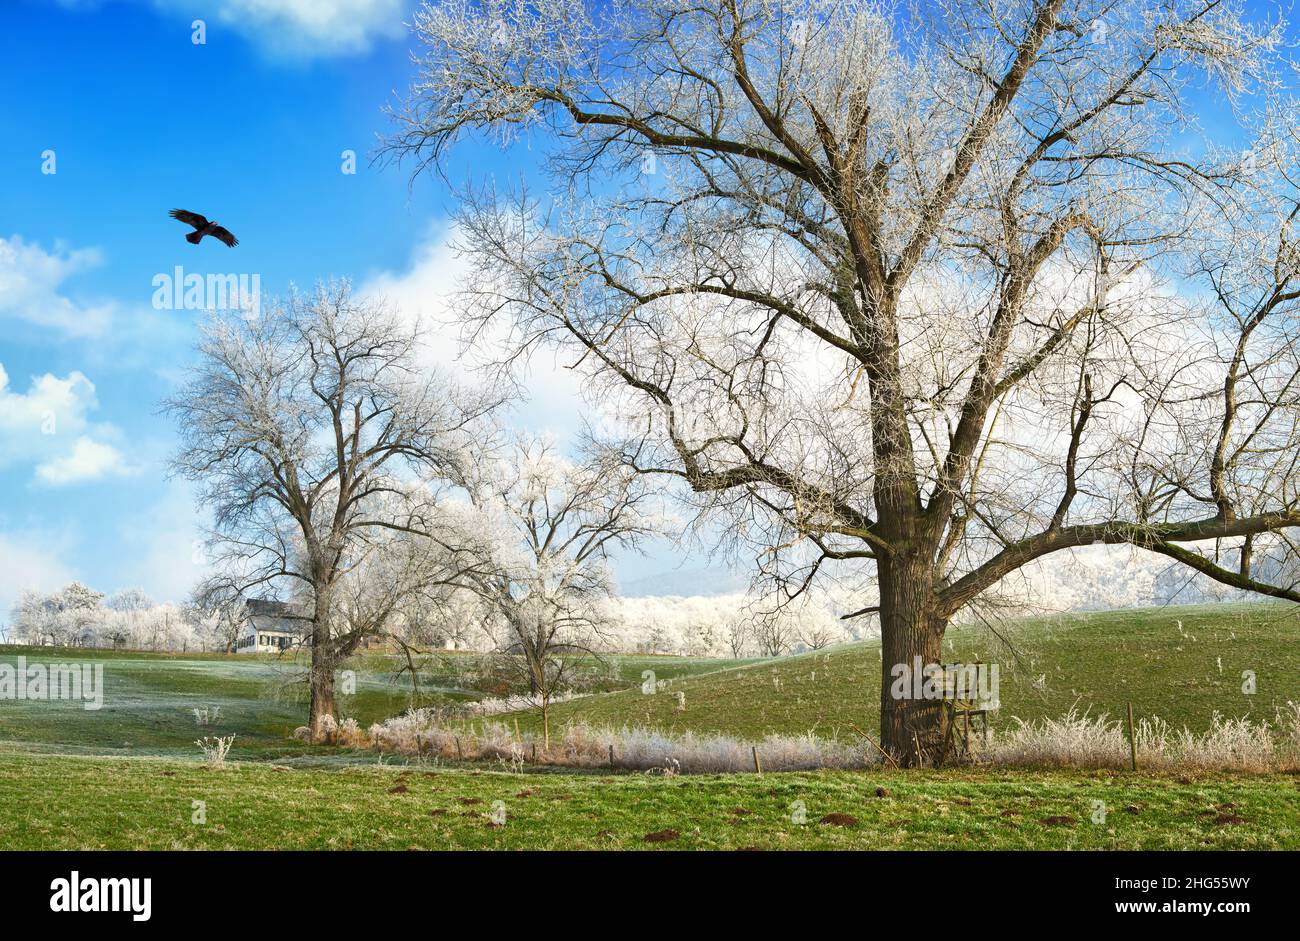 Winterlandschaft mit alten Bäumen mit Raureif auf einer gefrorenen grünen Weide, blauem Himmel, weißen Wolken und einem fliegenden Vogel Stockfoto